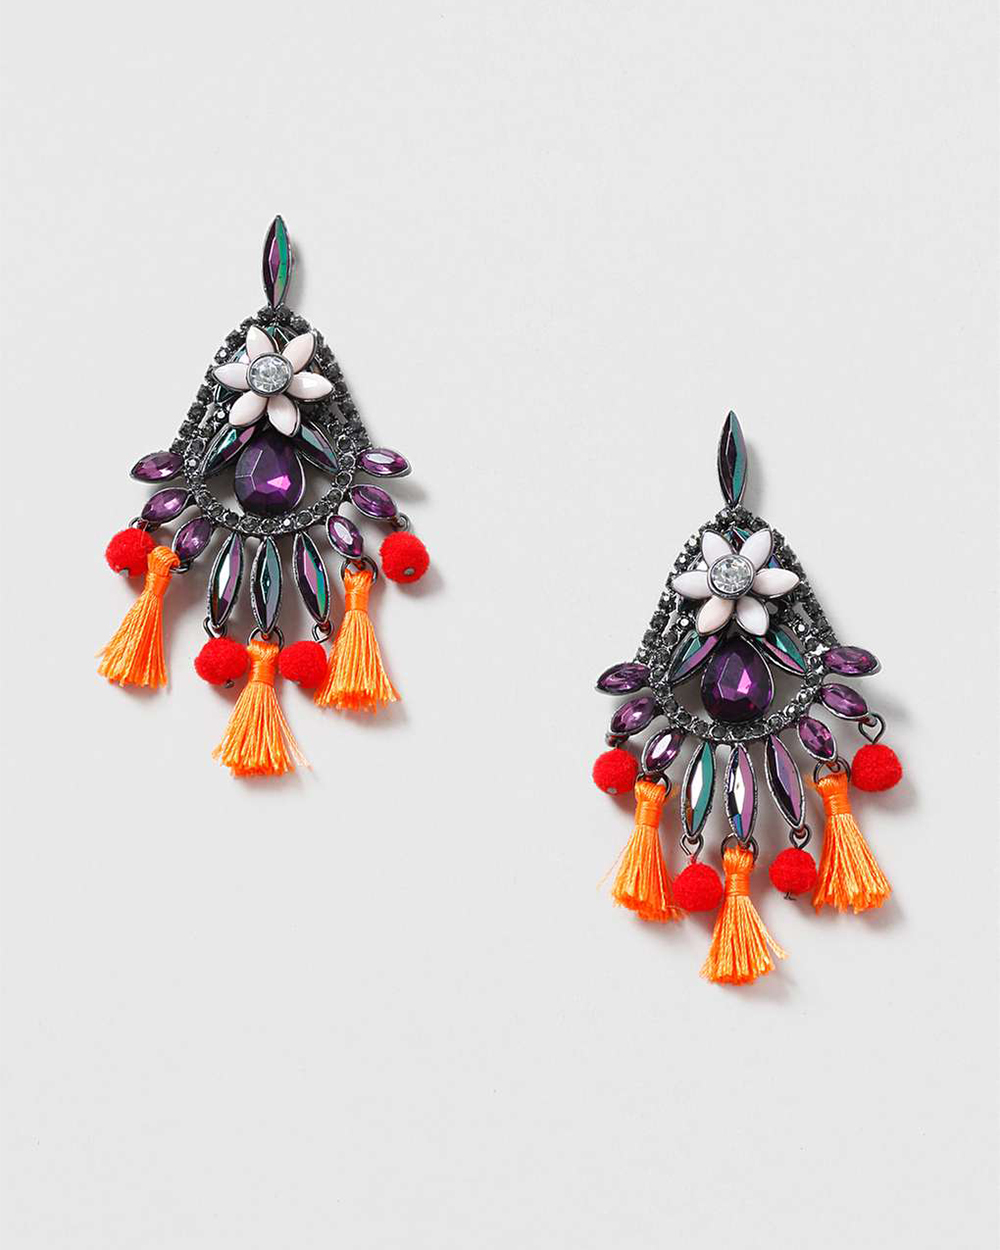 Topshop earrings, $27, by Topshop.